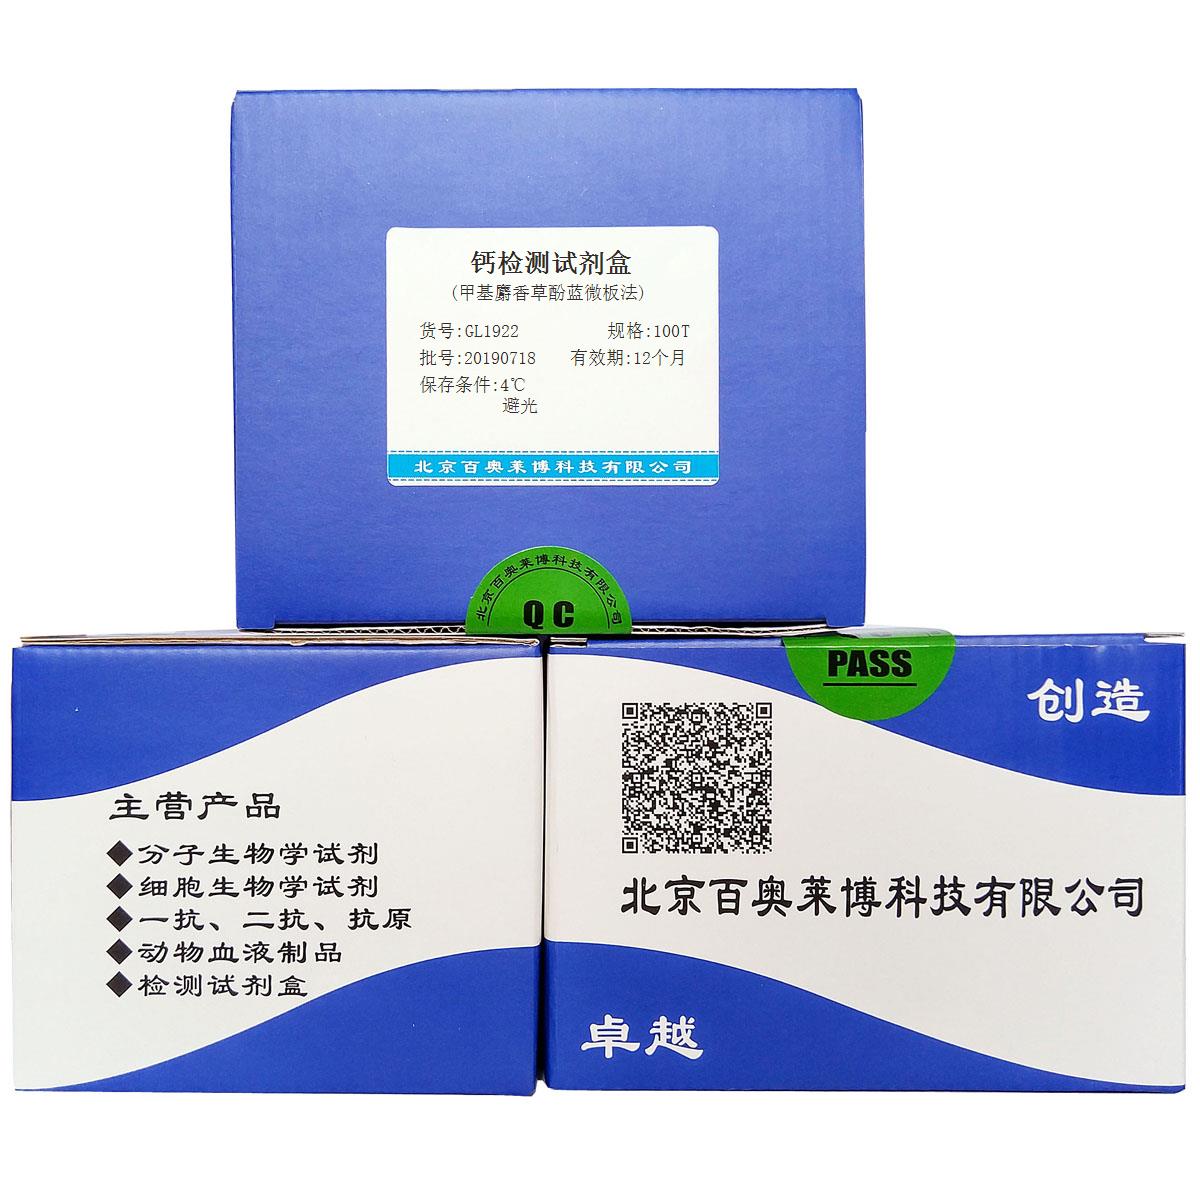 钙检测试剂盒(甲基麝香草酚蓝微板法)优惠促销